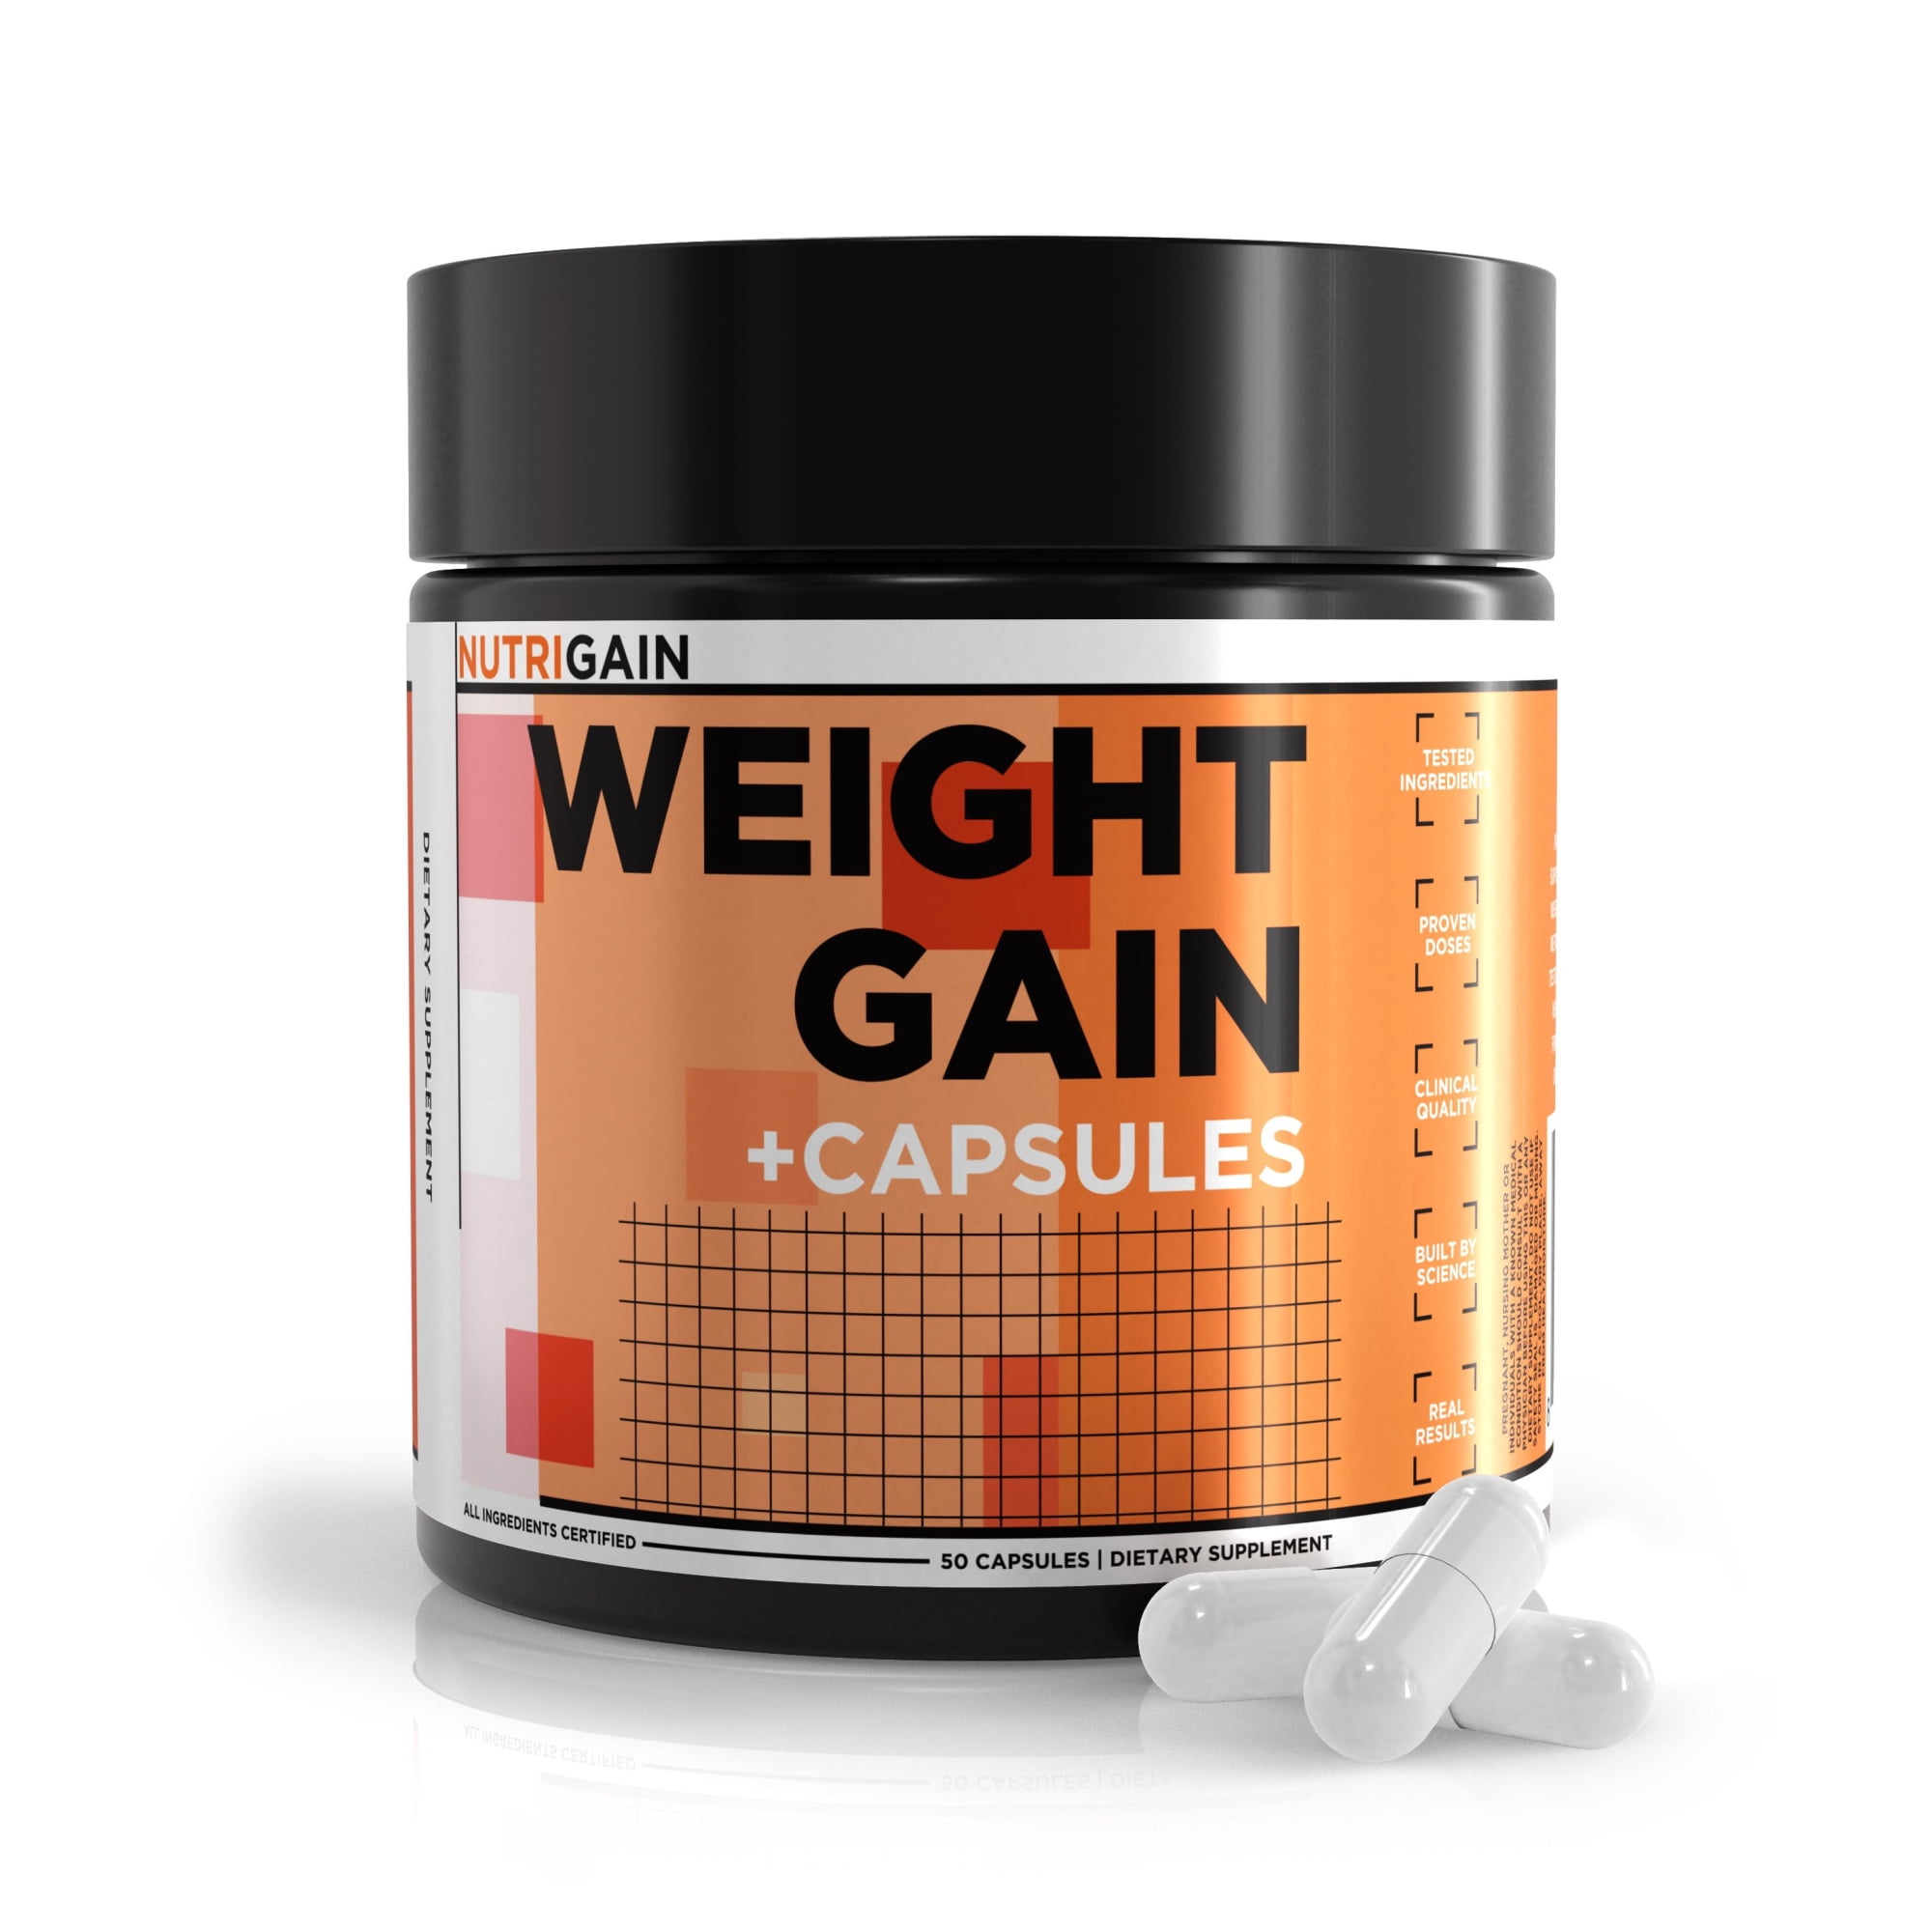 Nutrigain Weight Gain Capsules Designed